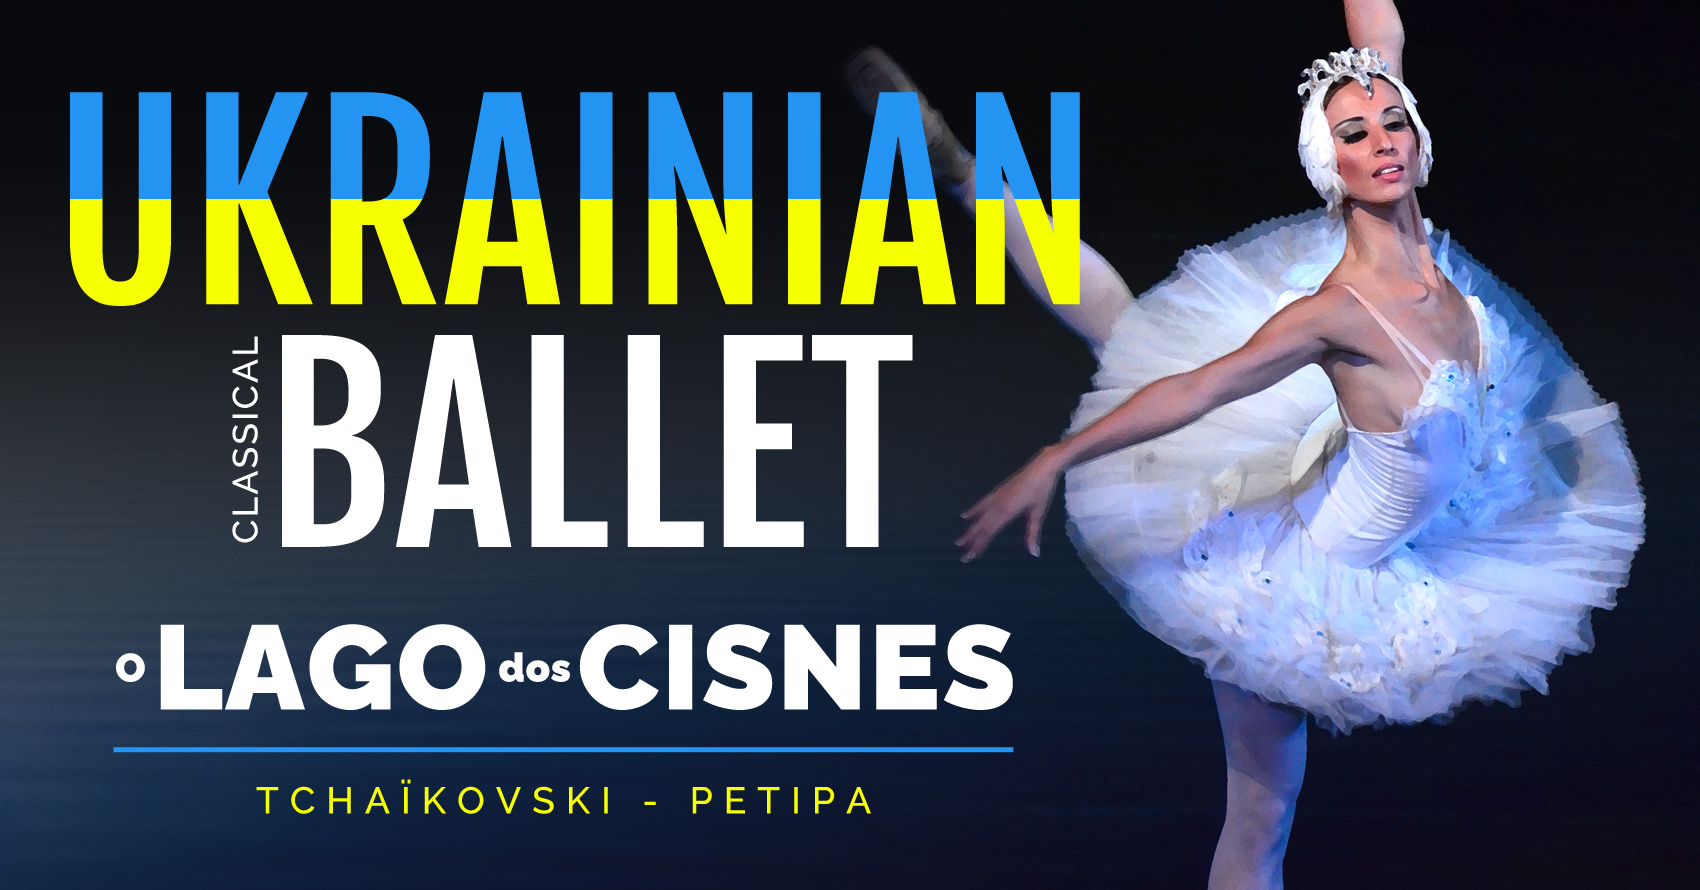 O LAGO DOS CISNES - Ukainian Classic Ballet